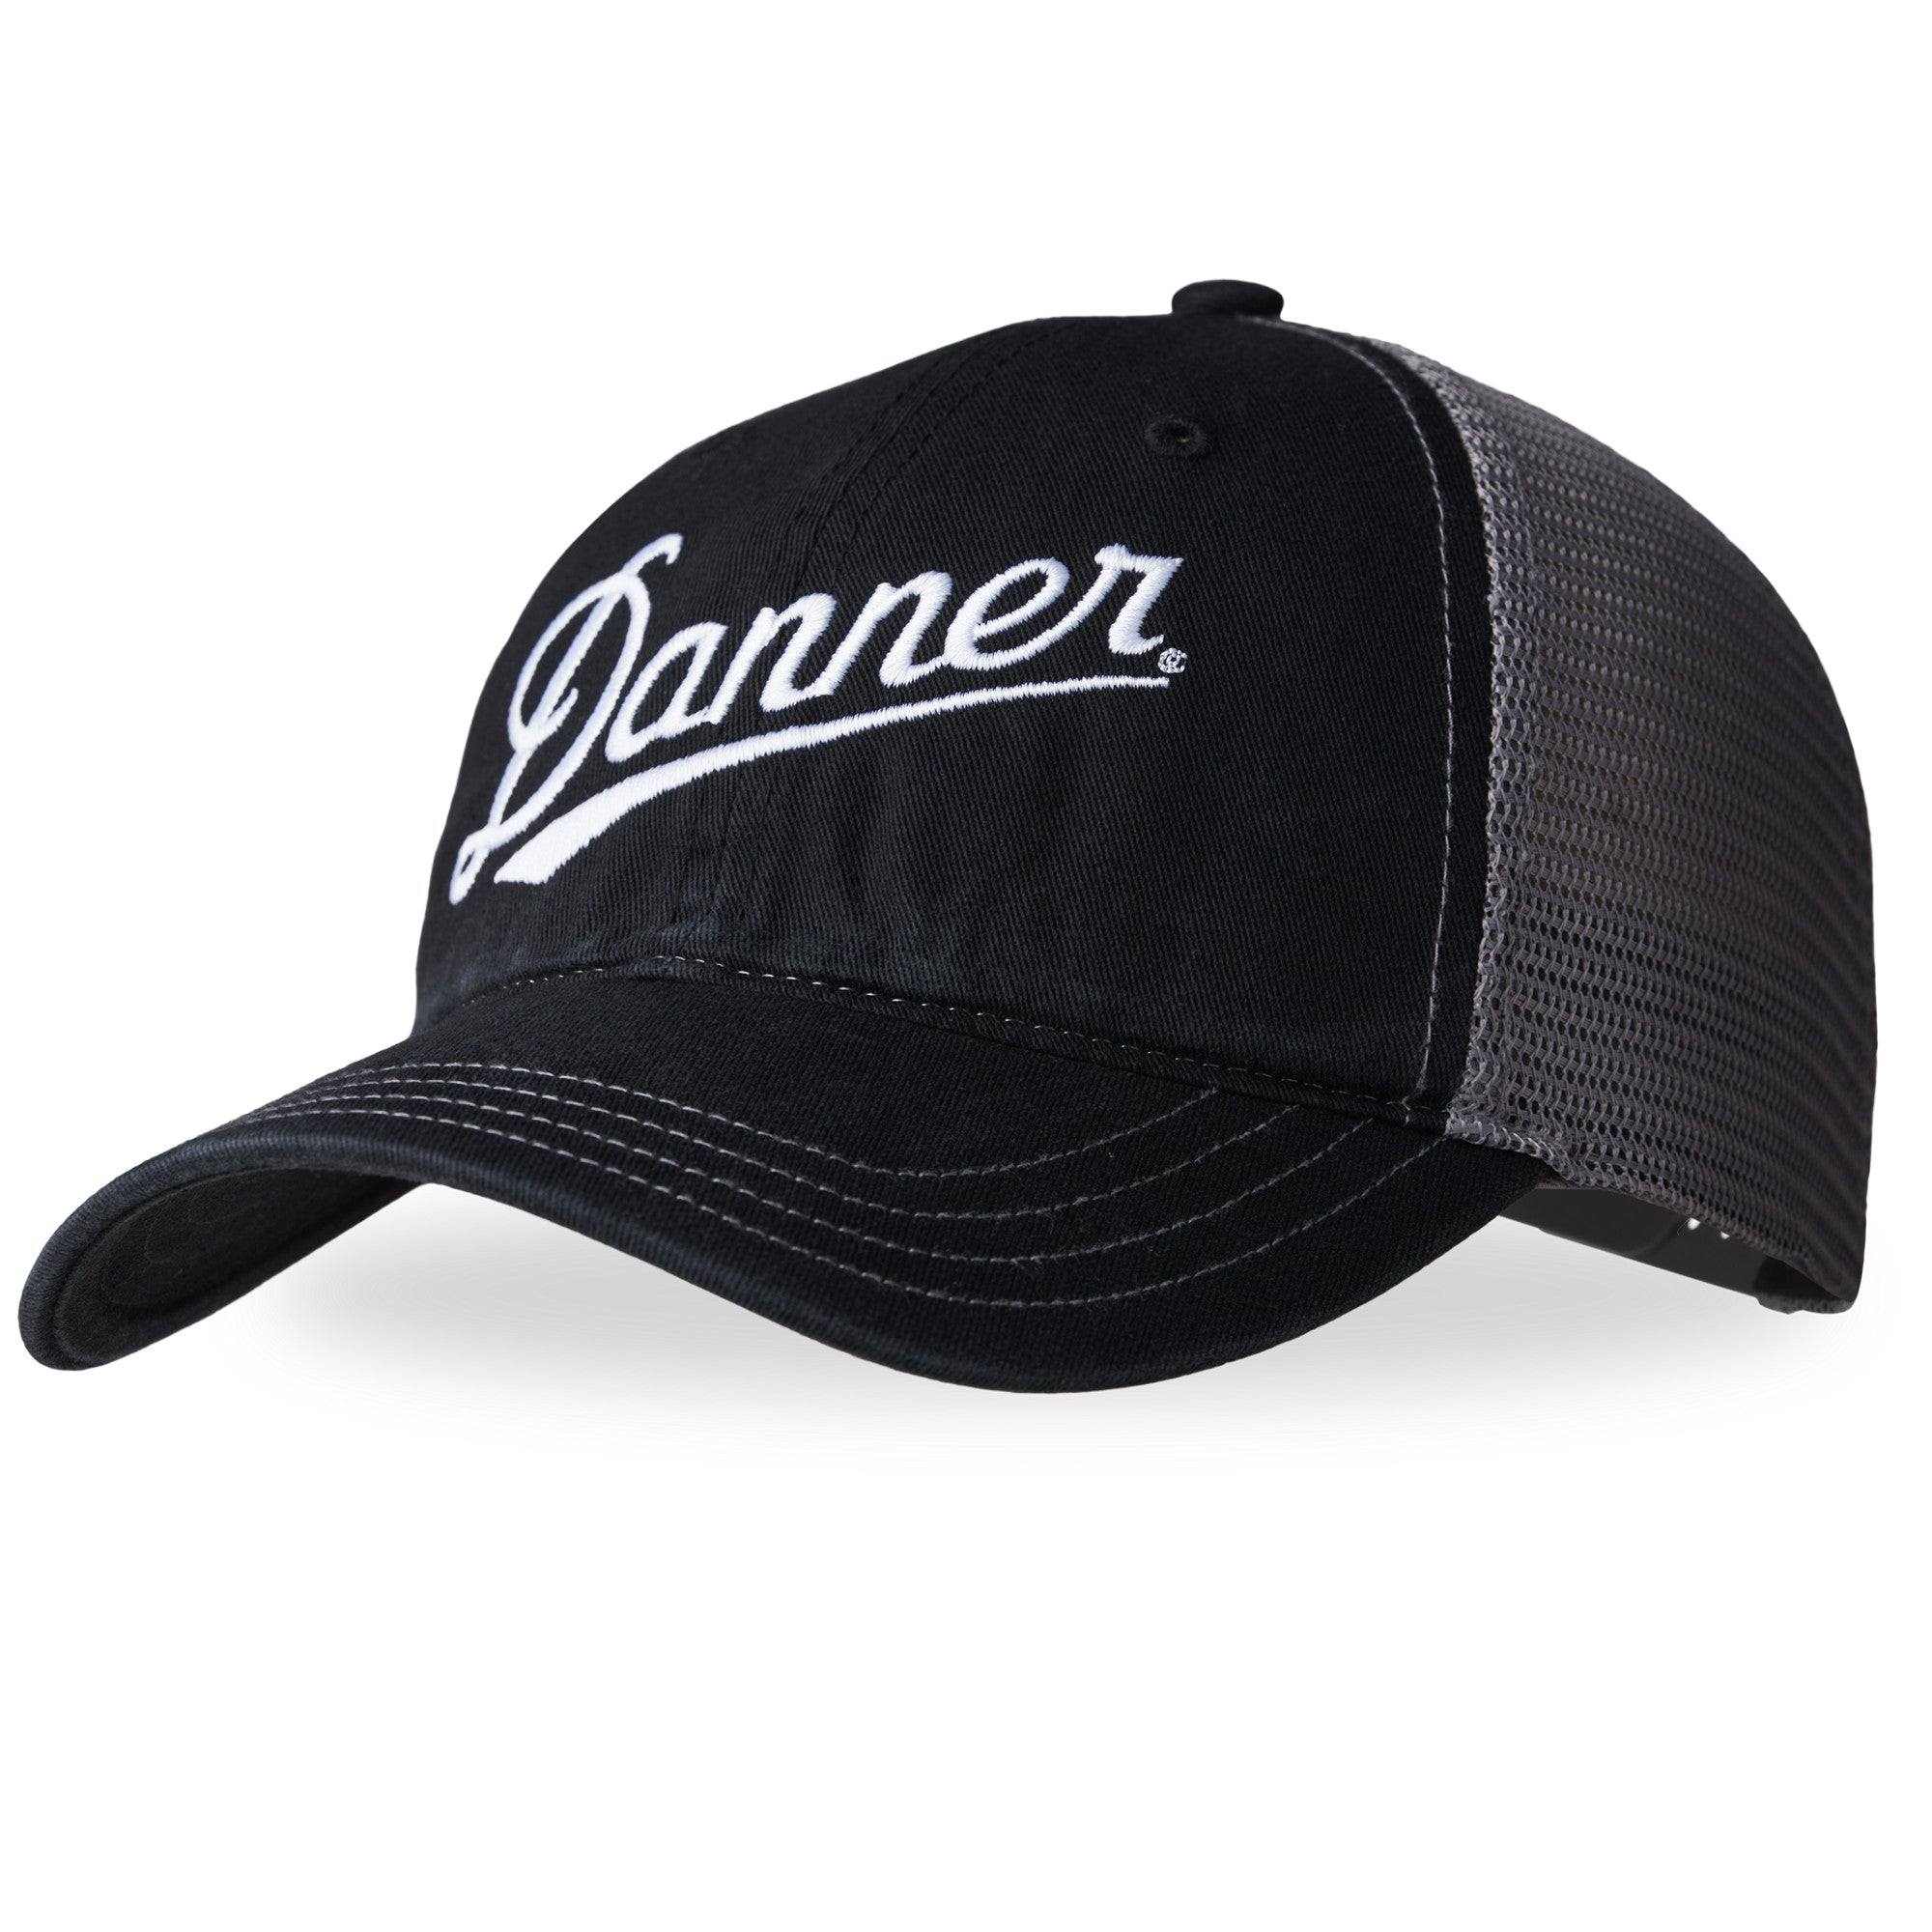 Danner Men's Embroidered Hat - Work World - Workwear, Work Boots, Safety Gear